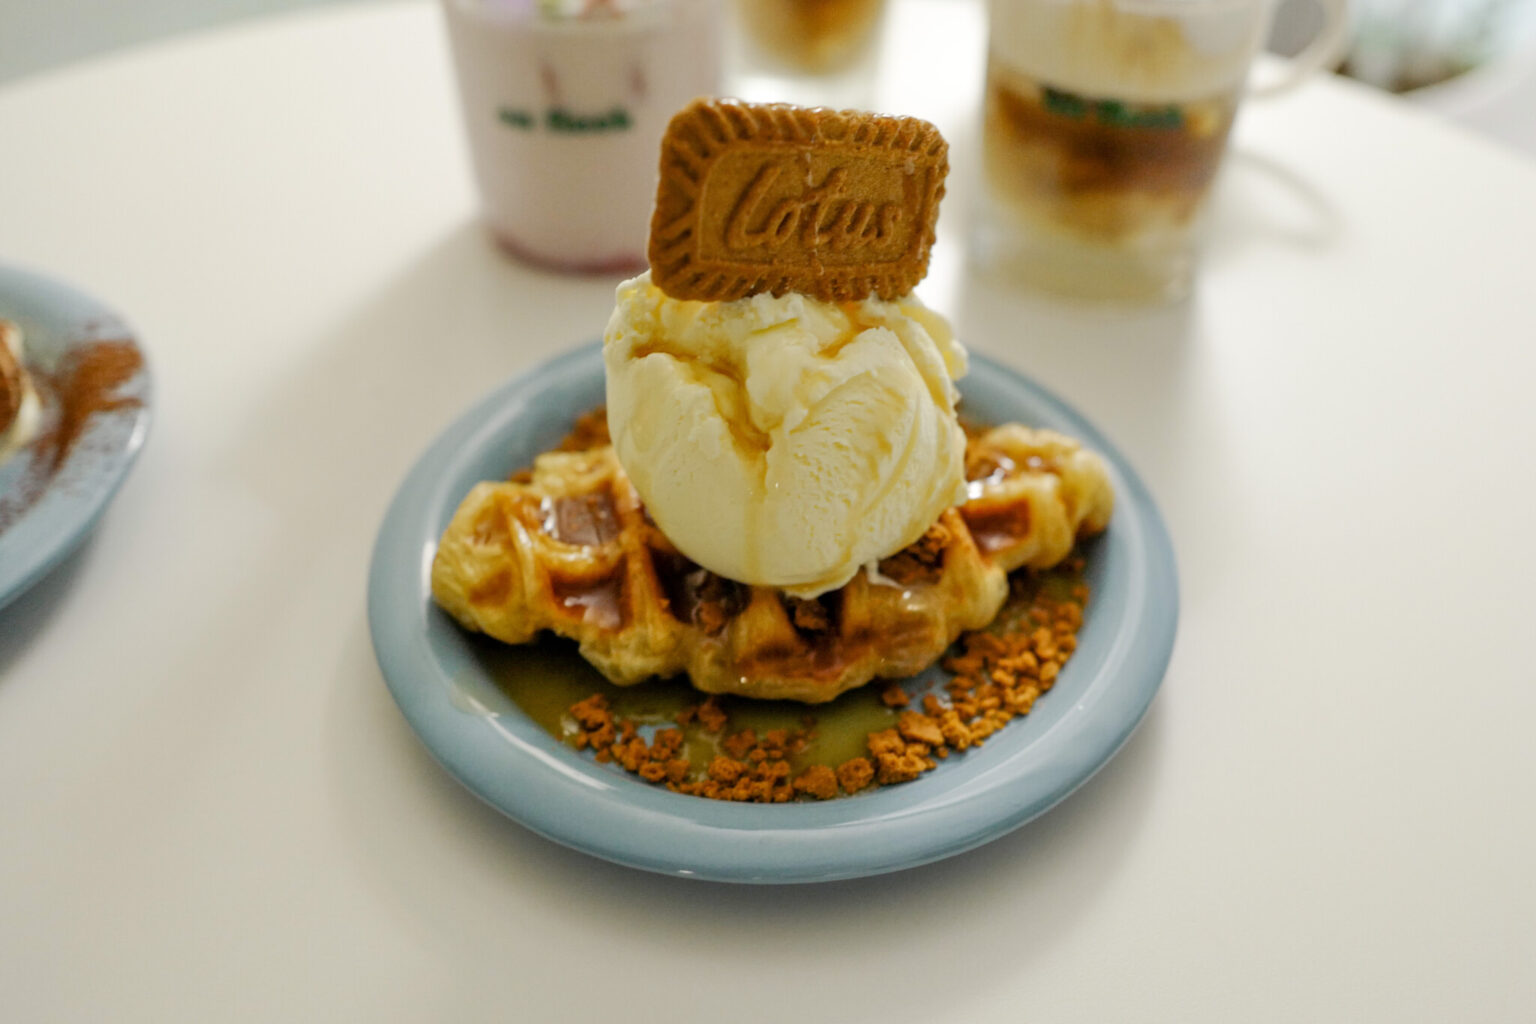 韓国では定番のクロッフルにアイスクリームやカラメルソースなどがたっぷりトッピング。「ロータスクロッフル」7,000ウォン。